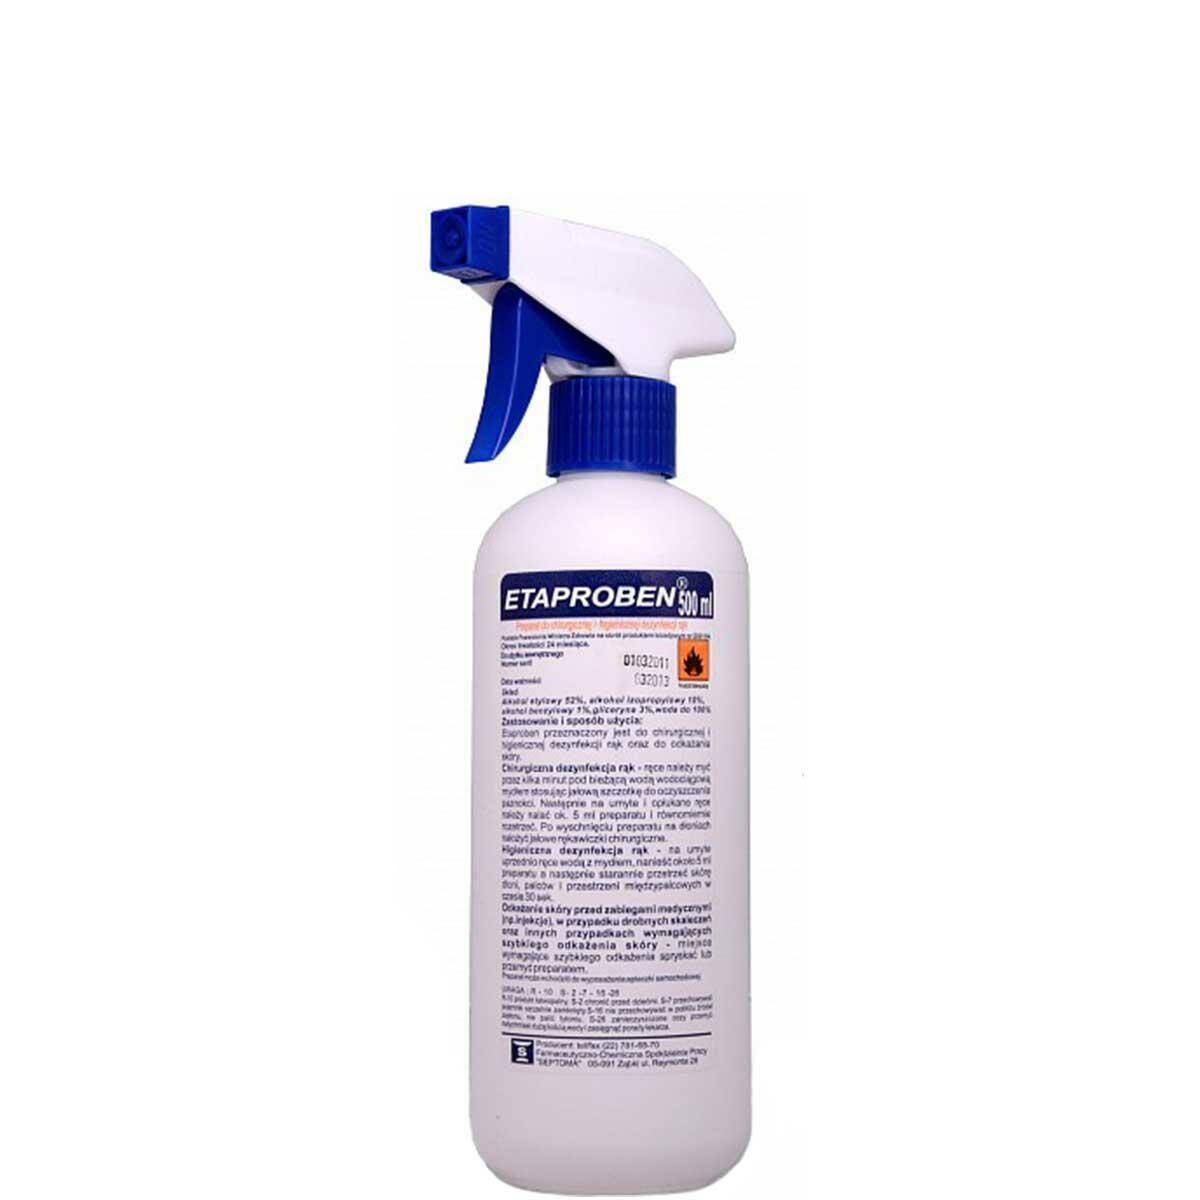 Septoma Etaproben spray do dezynfekcji rąk 500ml (Zdjęcie 1)